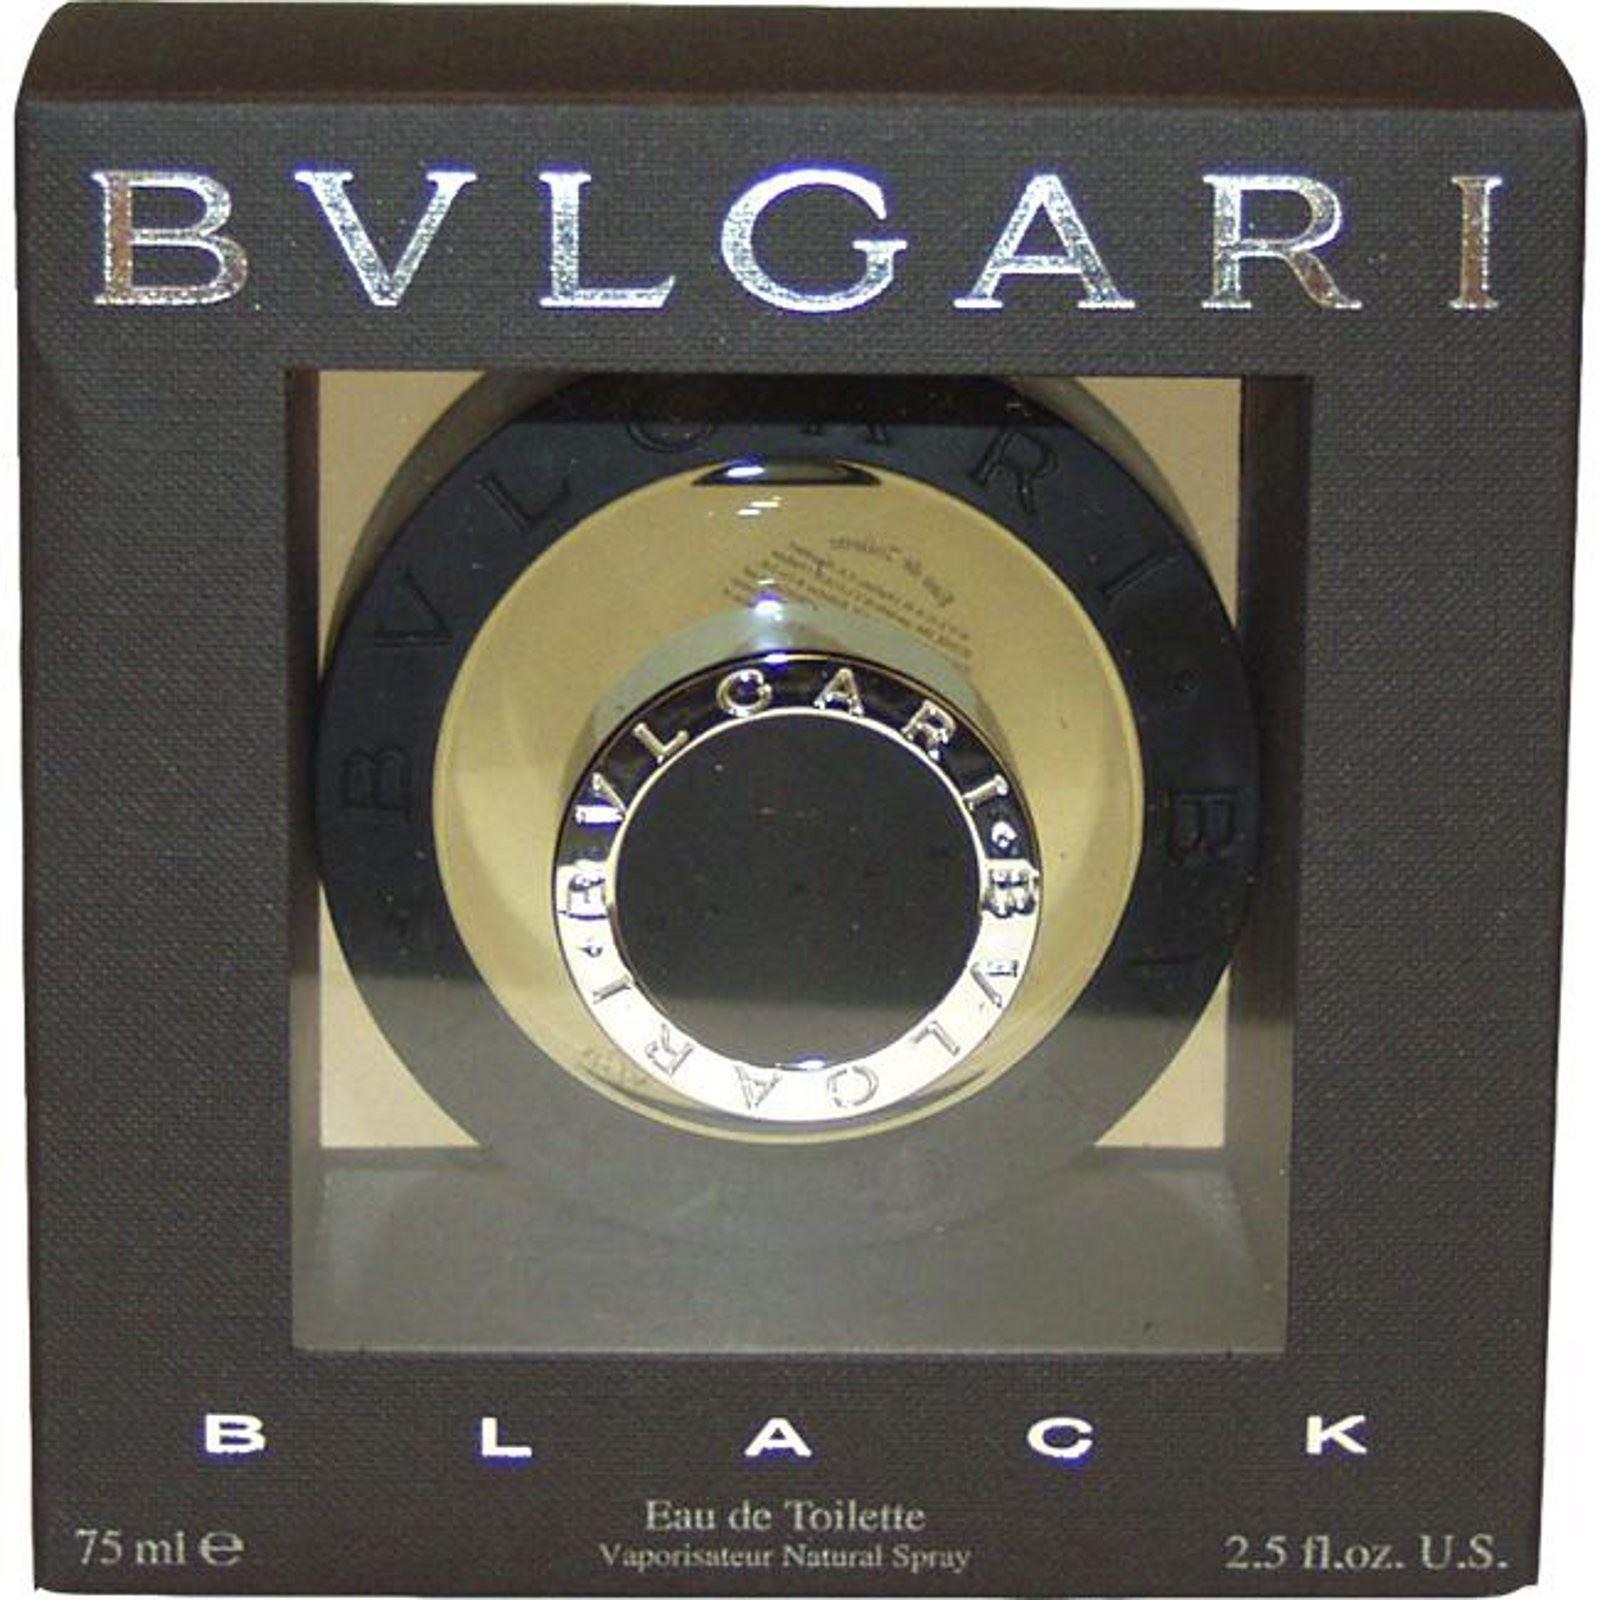 bvlgari black 75